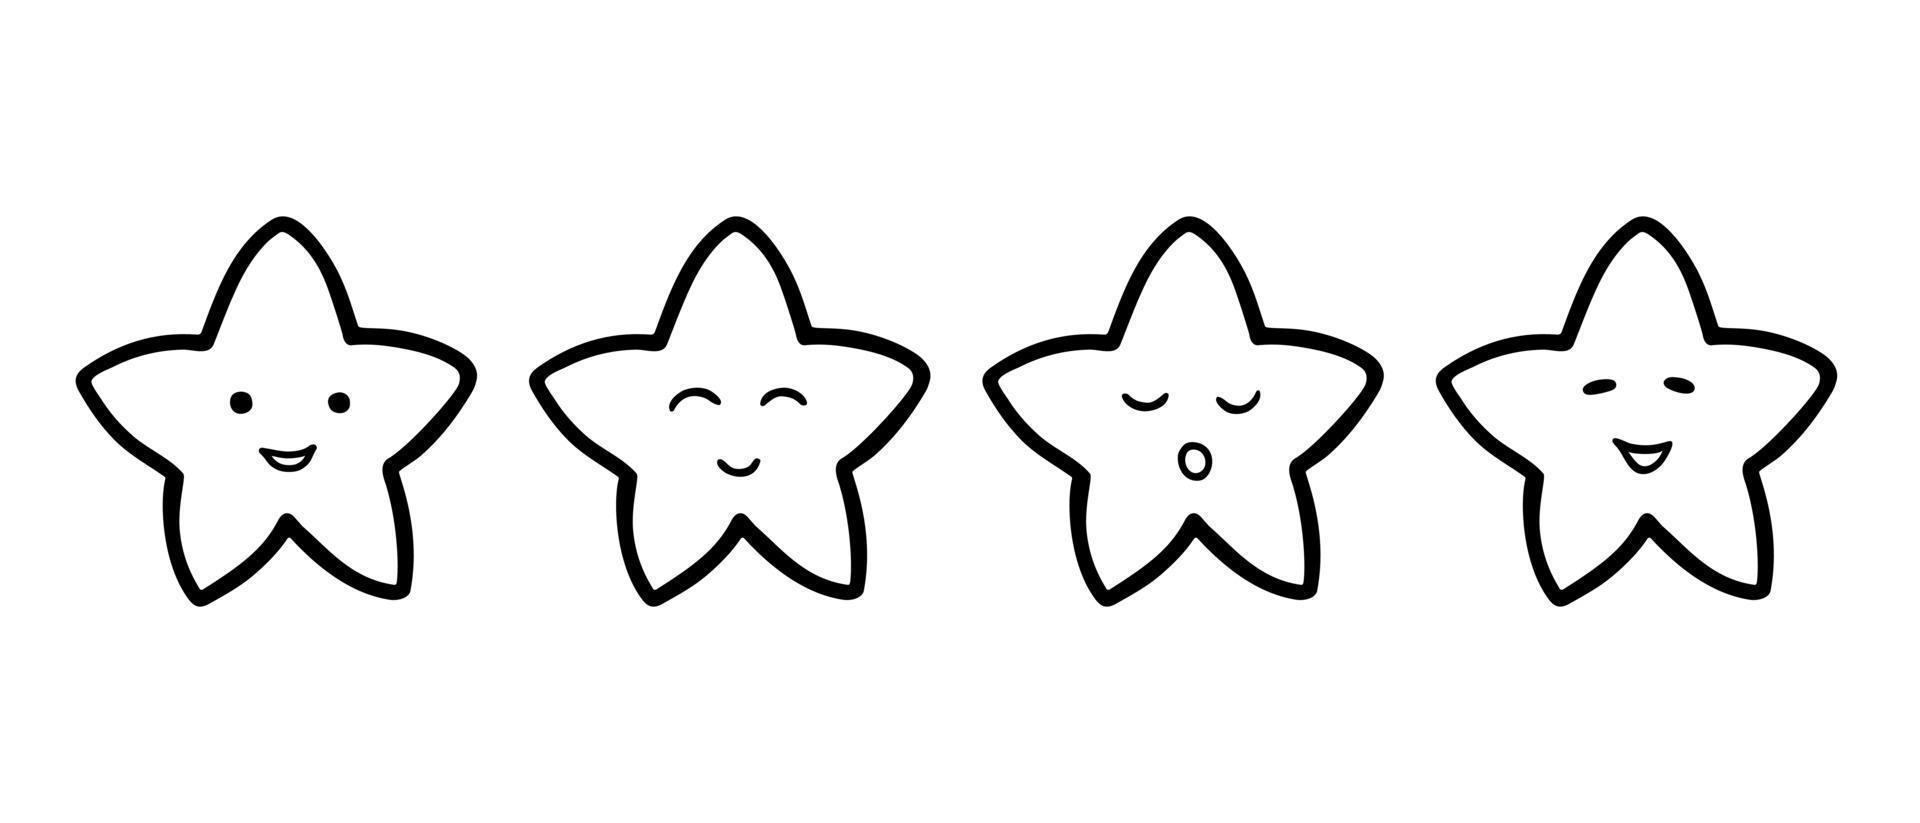 schattige ster emoticons pictogramserie. hand getrokken doodle stijl. geïsoleerde vectorillustratie vector